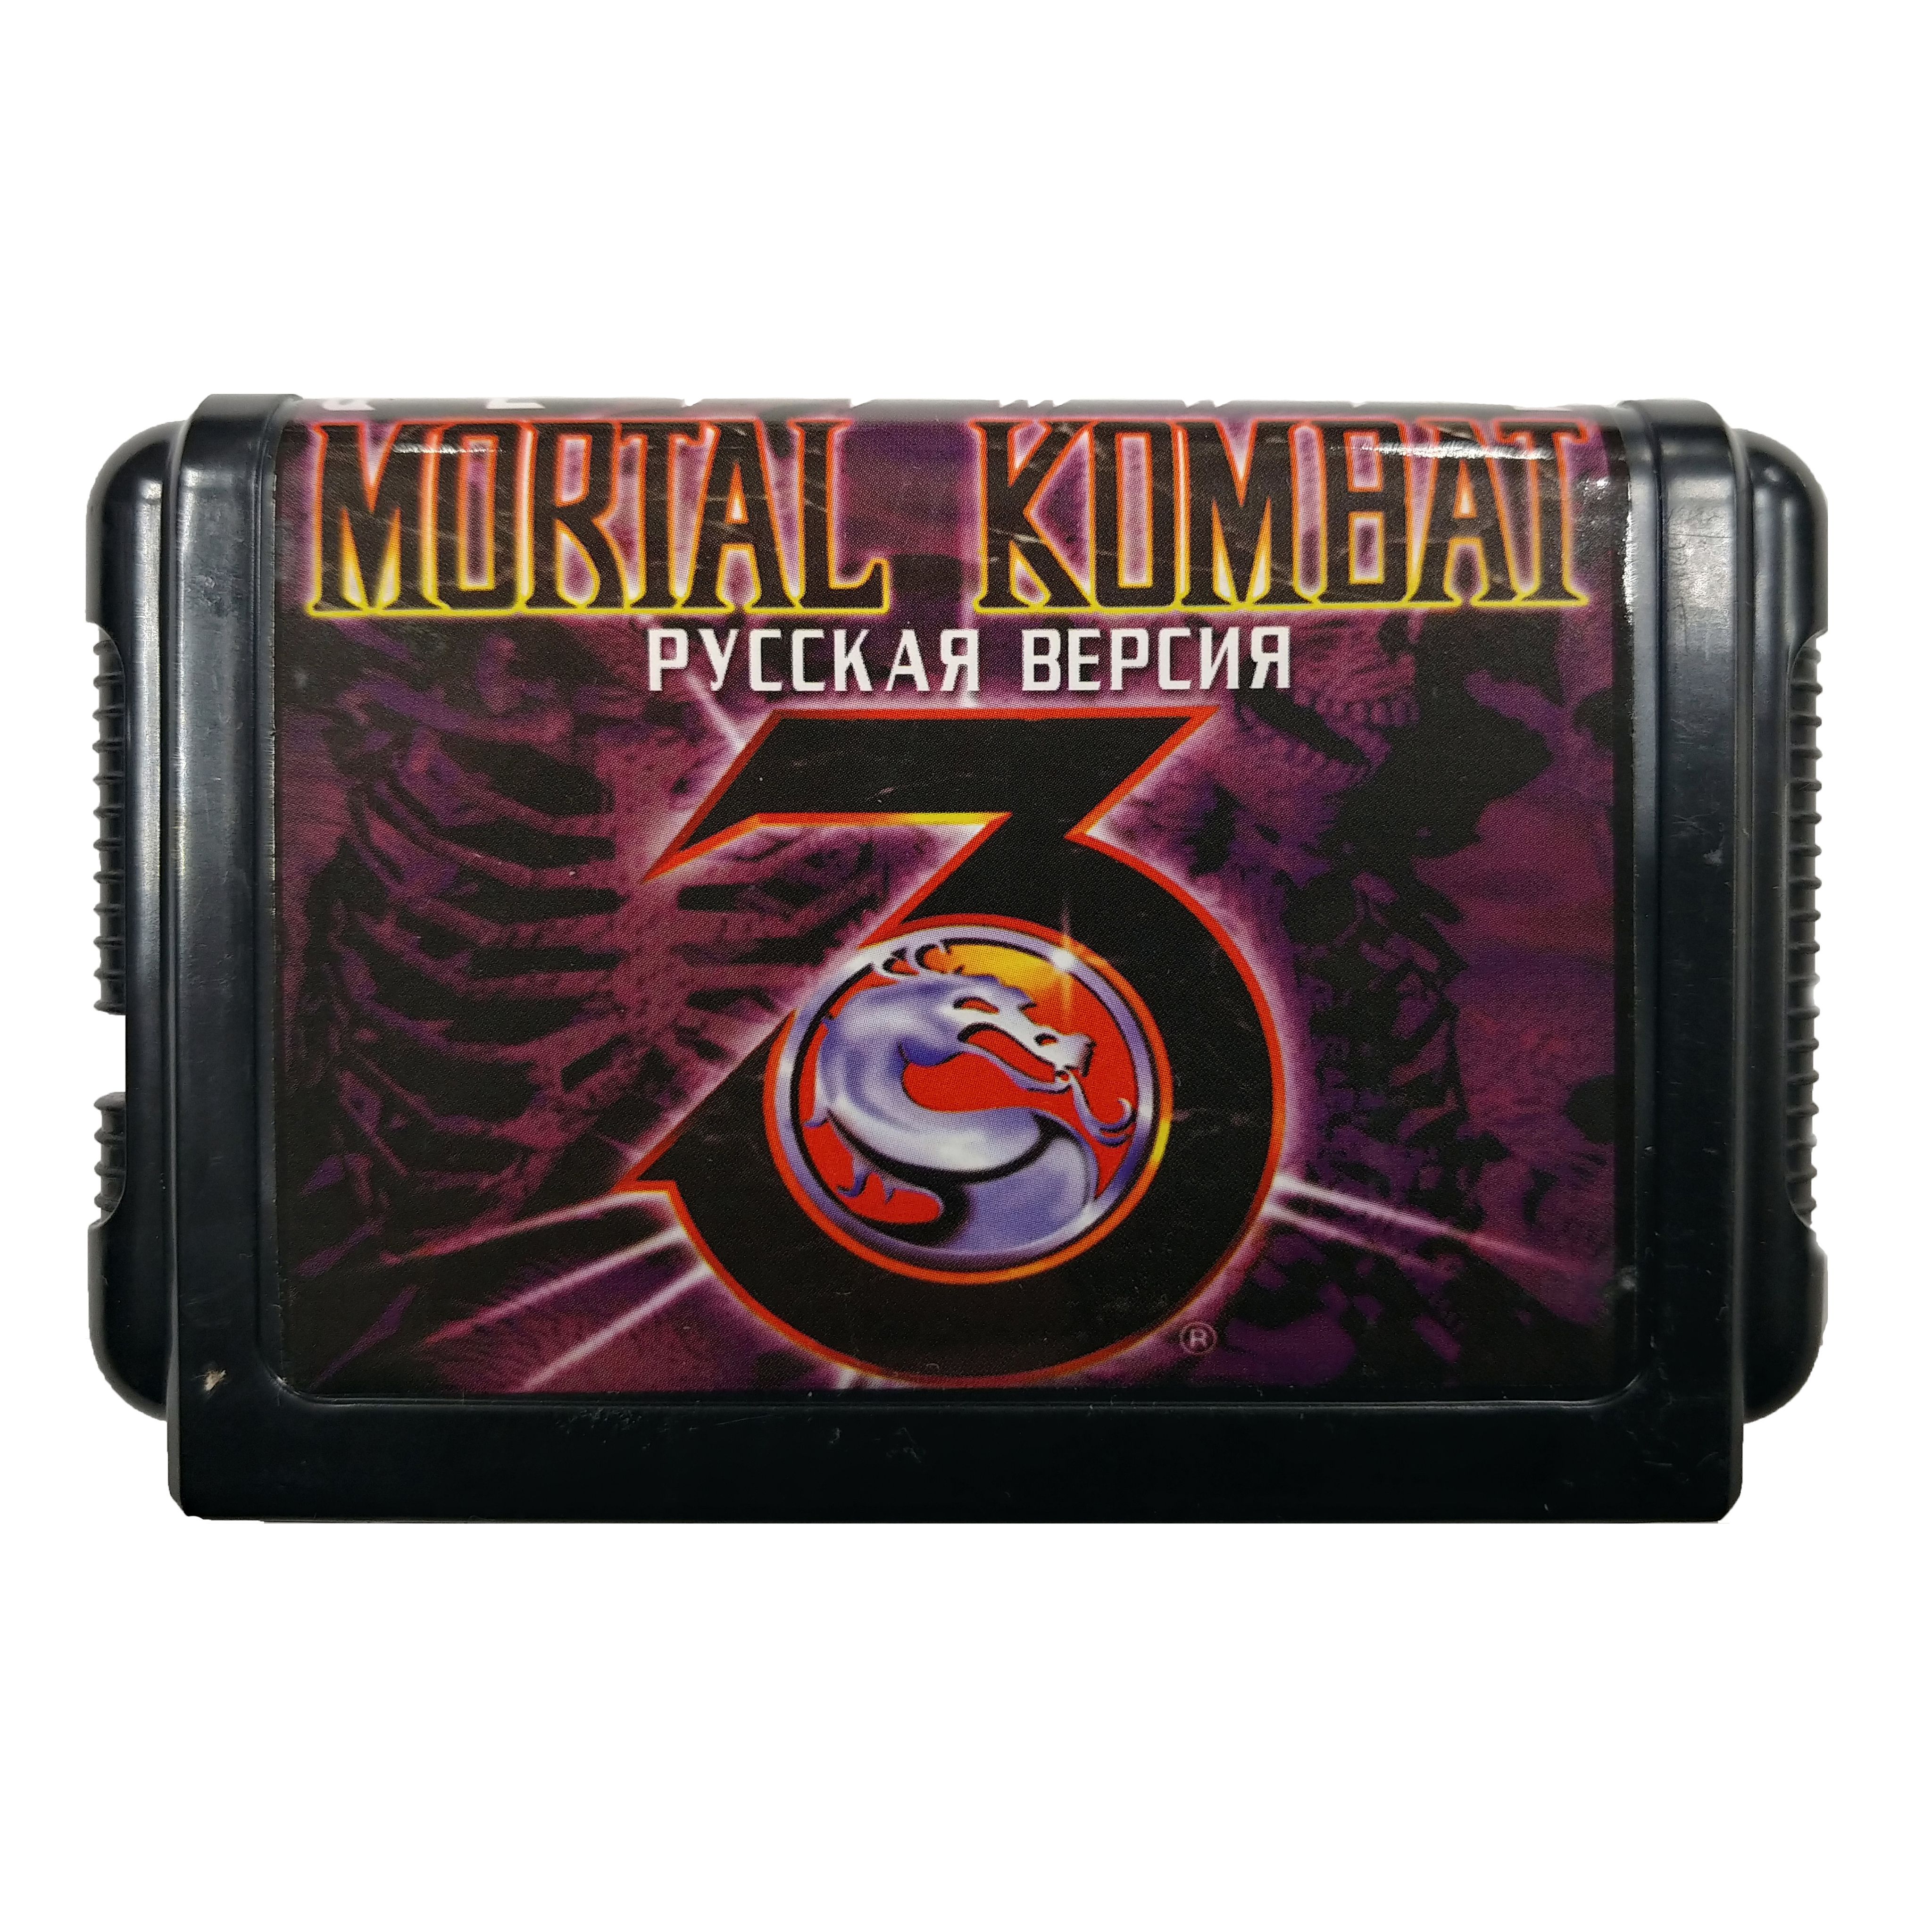 Игры для сега купить. Игровой картридж для Sega (16 bit) Mortal Kombat 3 Ultimate (dk3201). Mortal Kombat 3 Sega Mega Drive картридж. Игровой картридж сега 16 бит Mortal Kombat 3 Ultimate. Картриджи для Sega Mega Drive Mortal Combat.